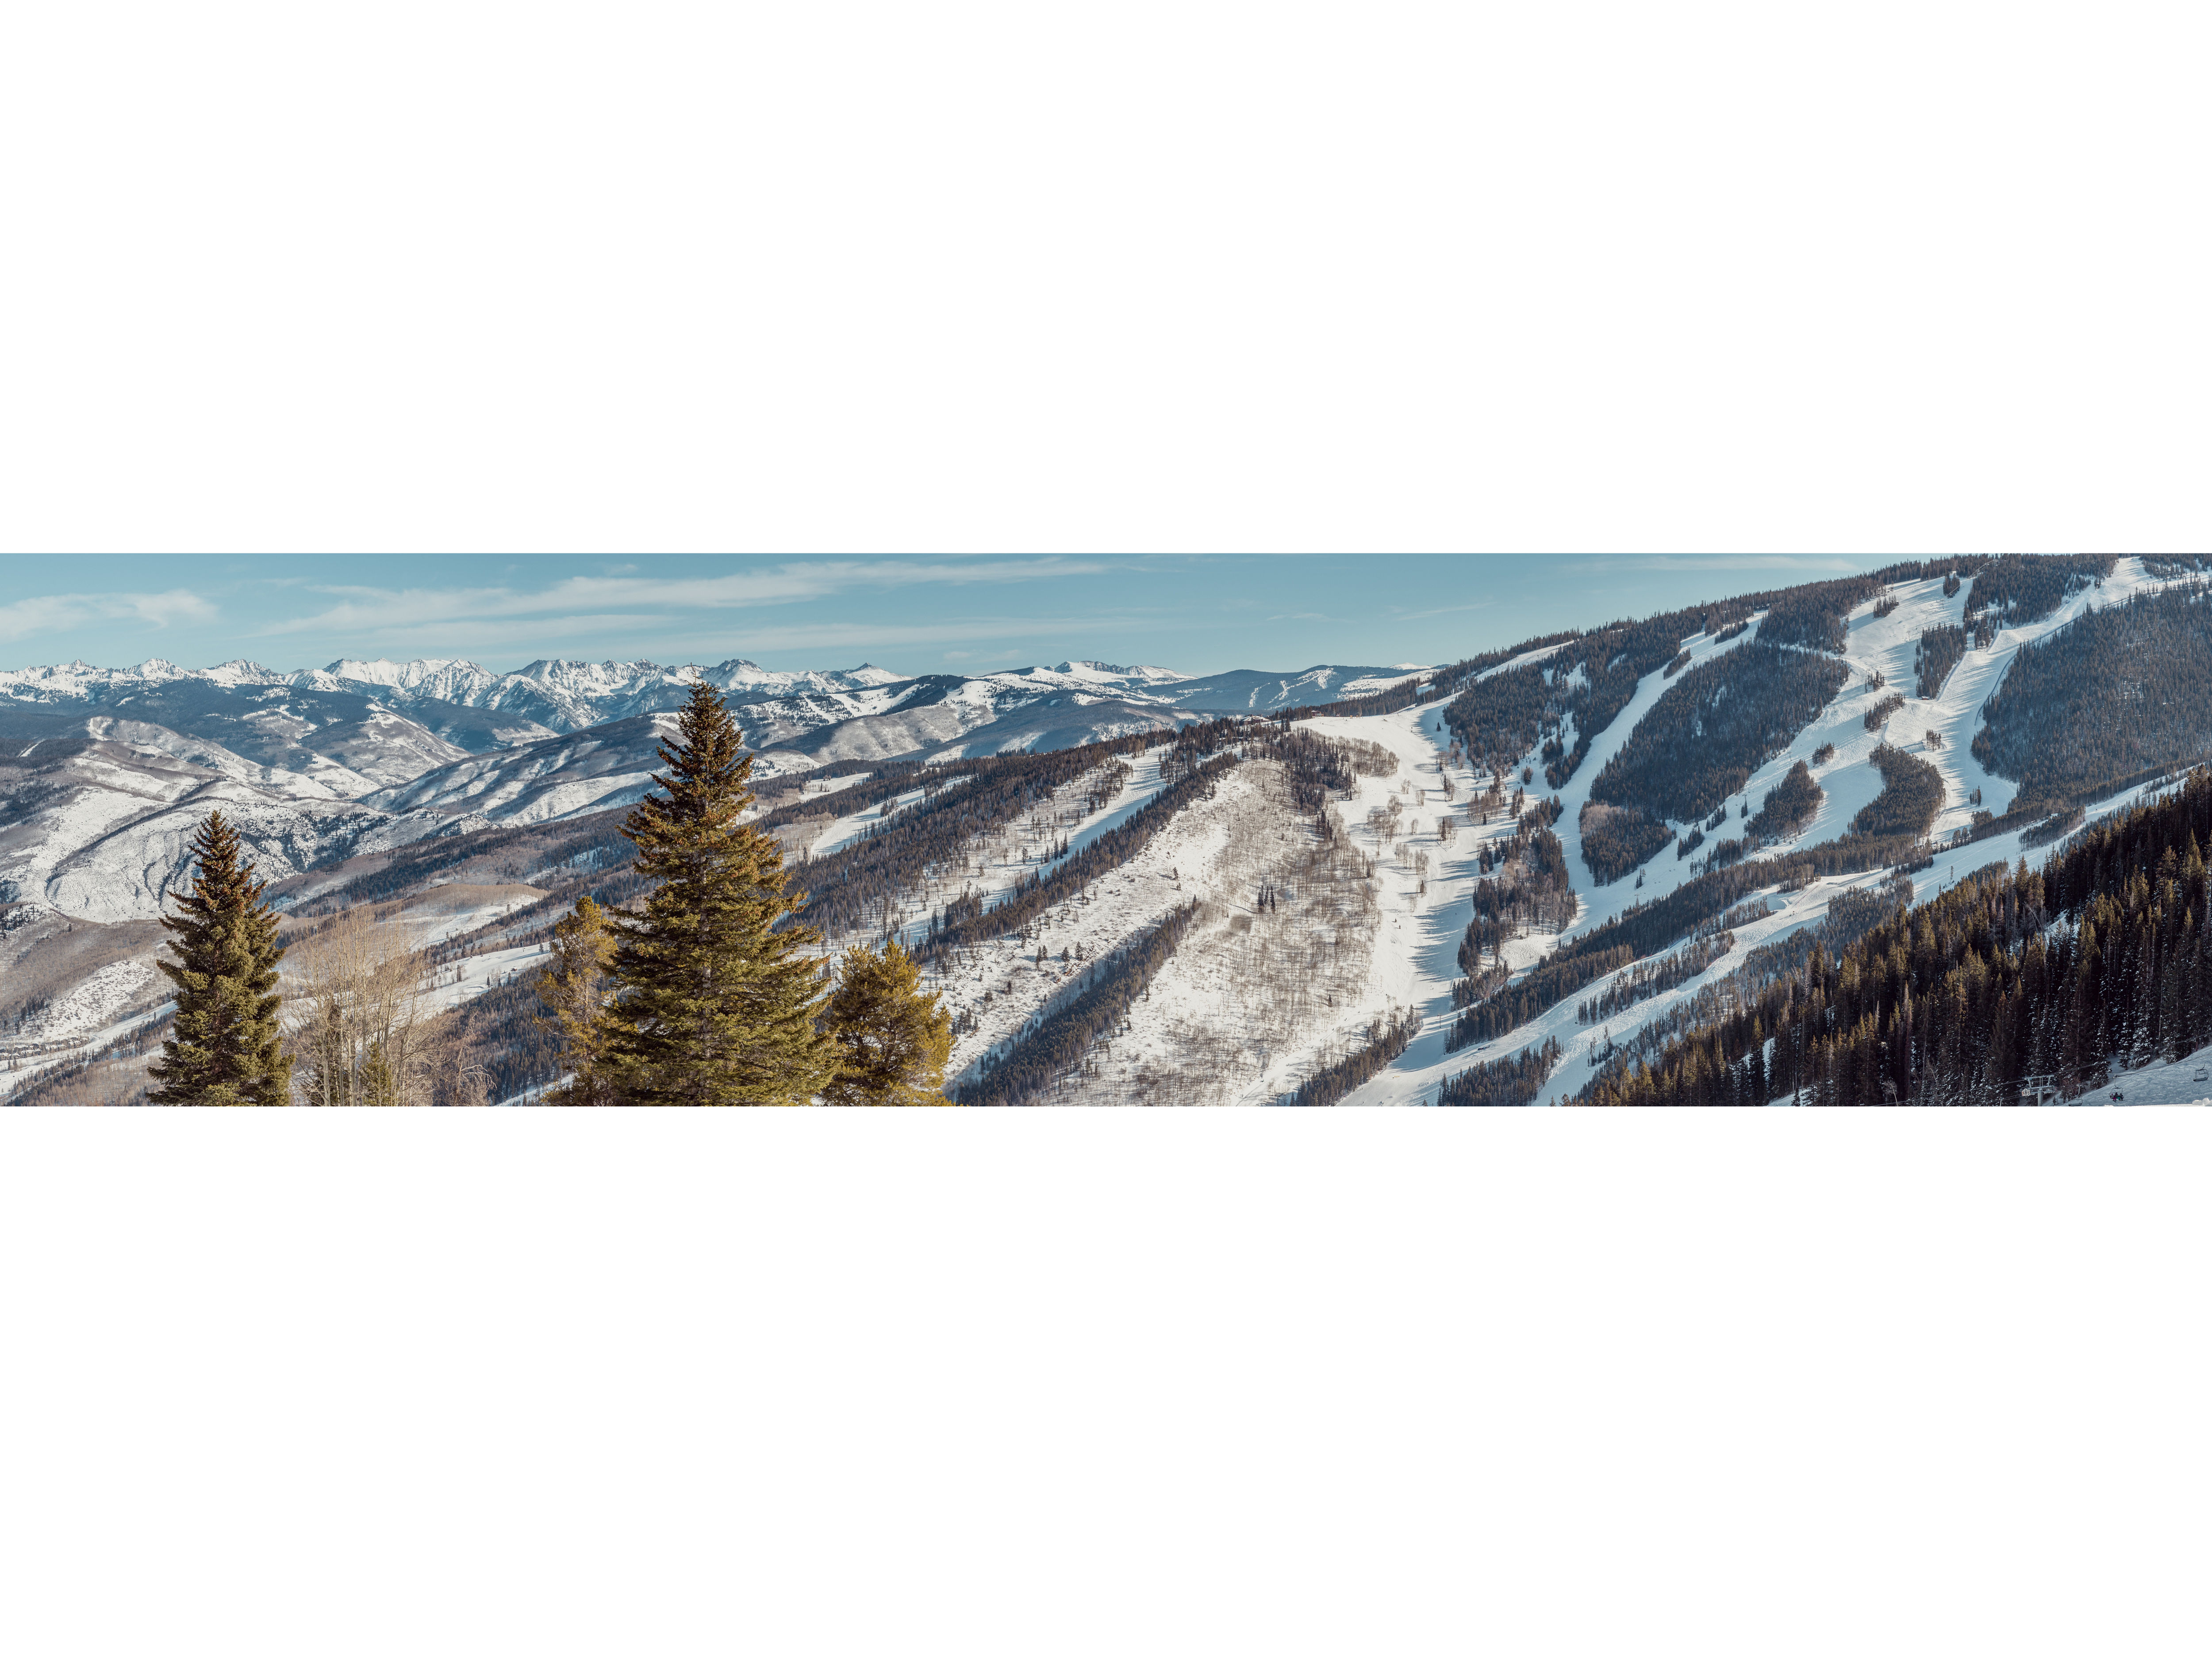 Alpine Valley Ski Resort Part of Sale to Vail Resorts